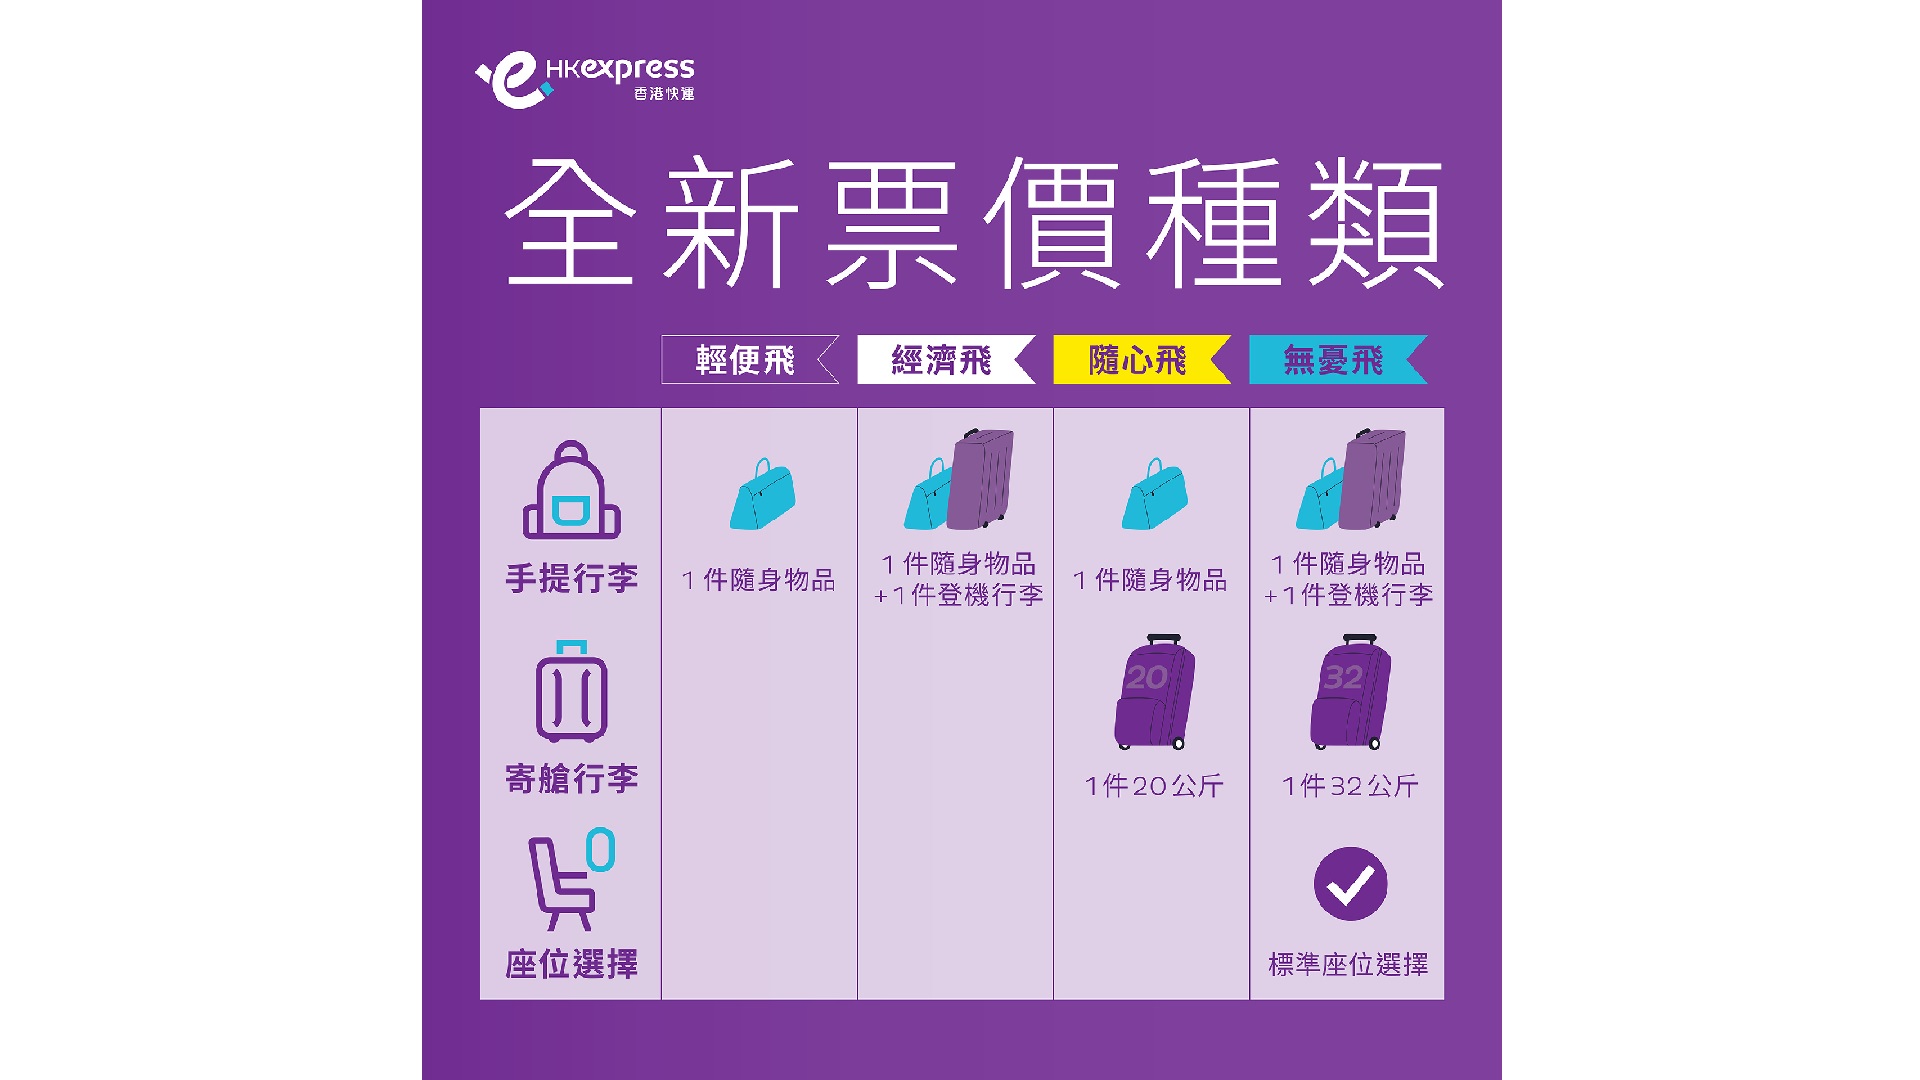 【一文睇晒】香港快運新行李政策 設4級制票價 最平票種只可帶1件隨身物品